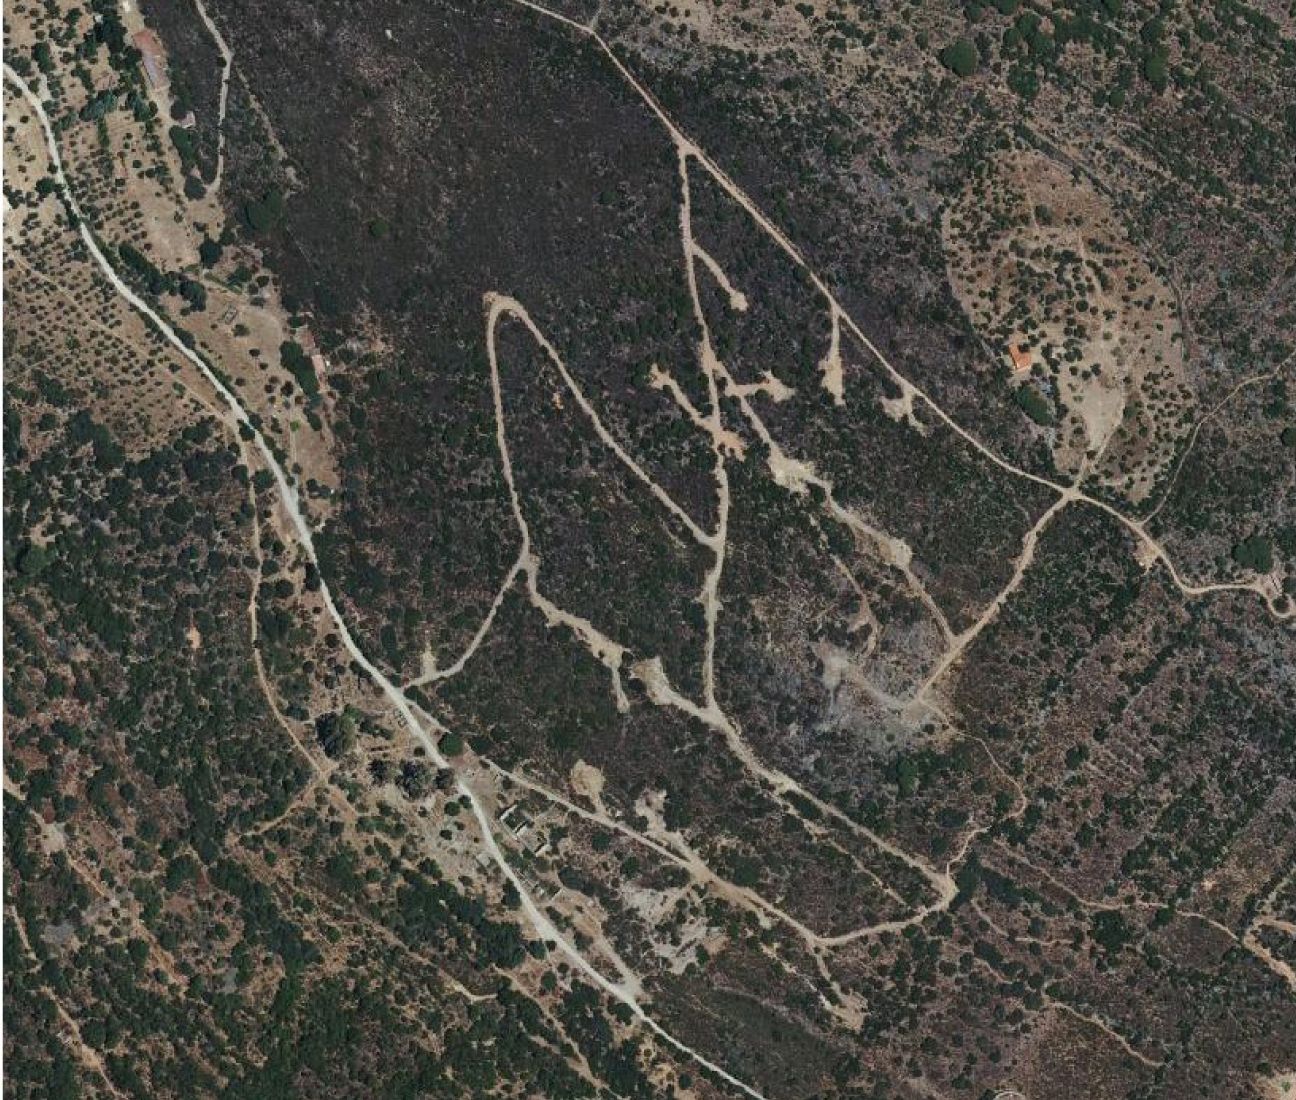 Vista aérea de la zona de Valdeflores en 2017, cuando la empresa ya había iniciado las labores del sondeo, en una foto que formó parte del expediente tramitado por el ayuntamiento.